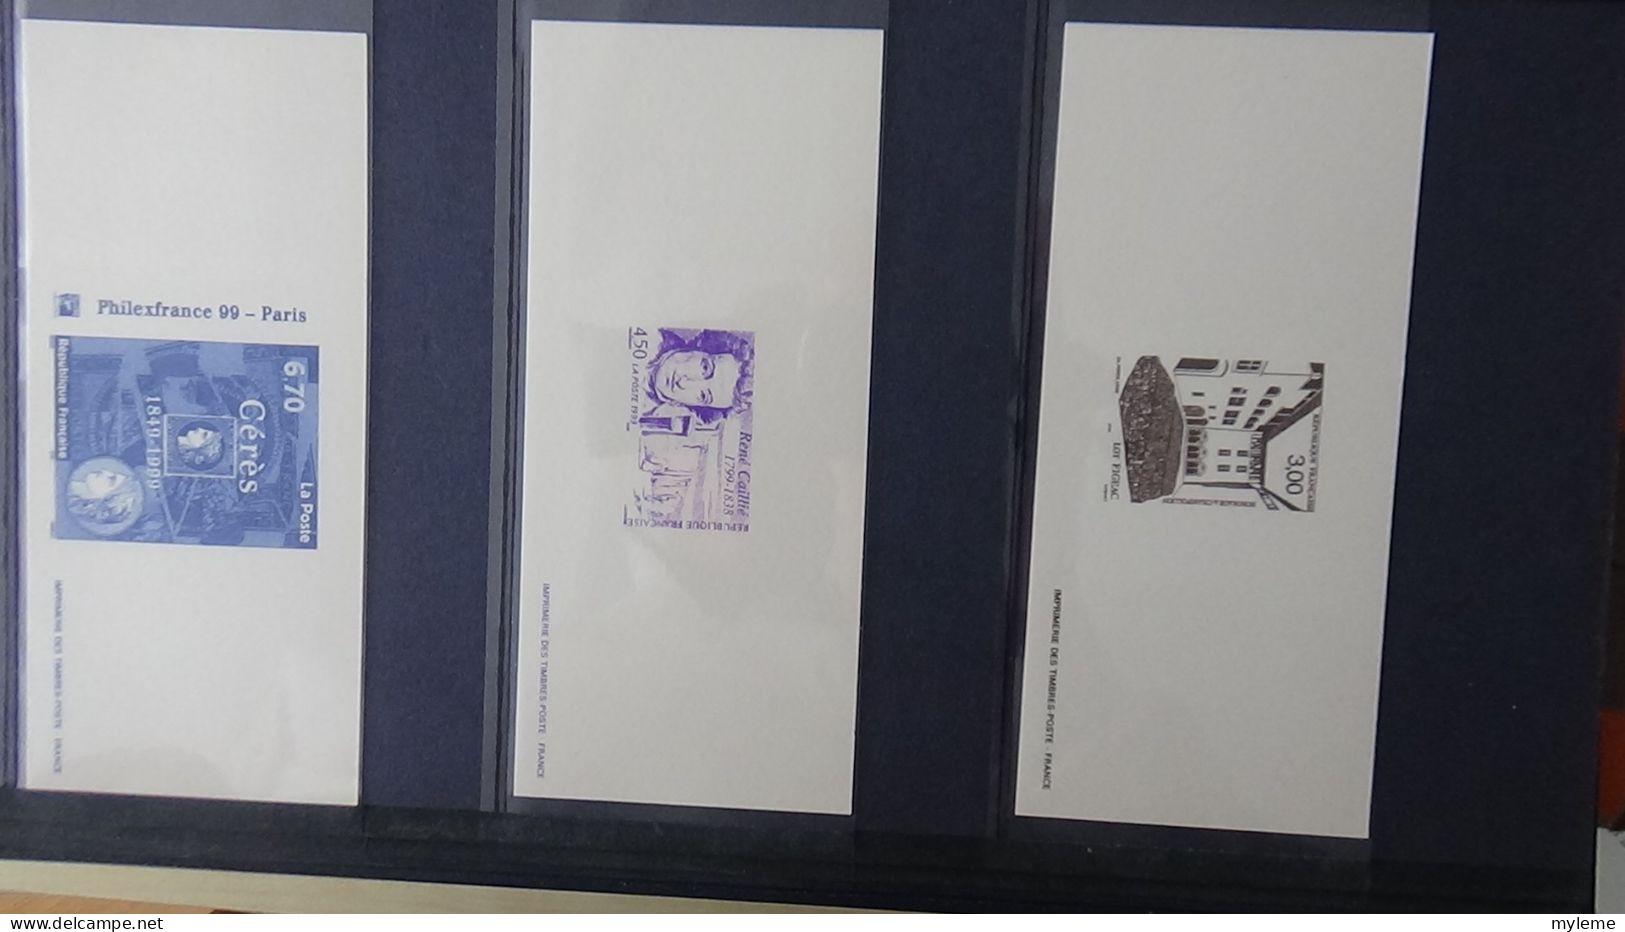 BF76 Gravures des timbres-poste de France sans son album d'origine   A saisir !!!